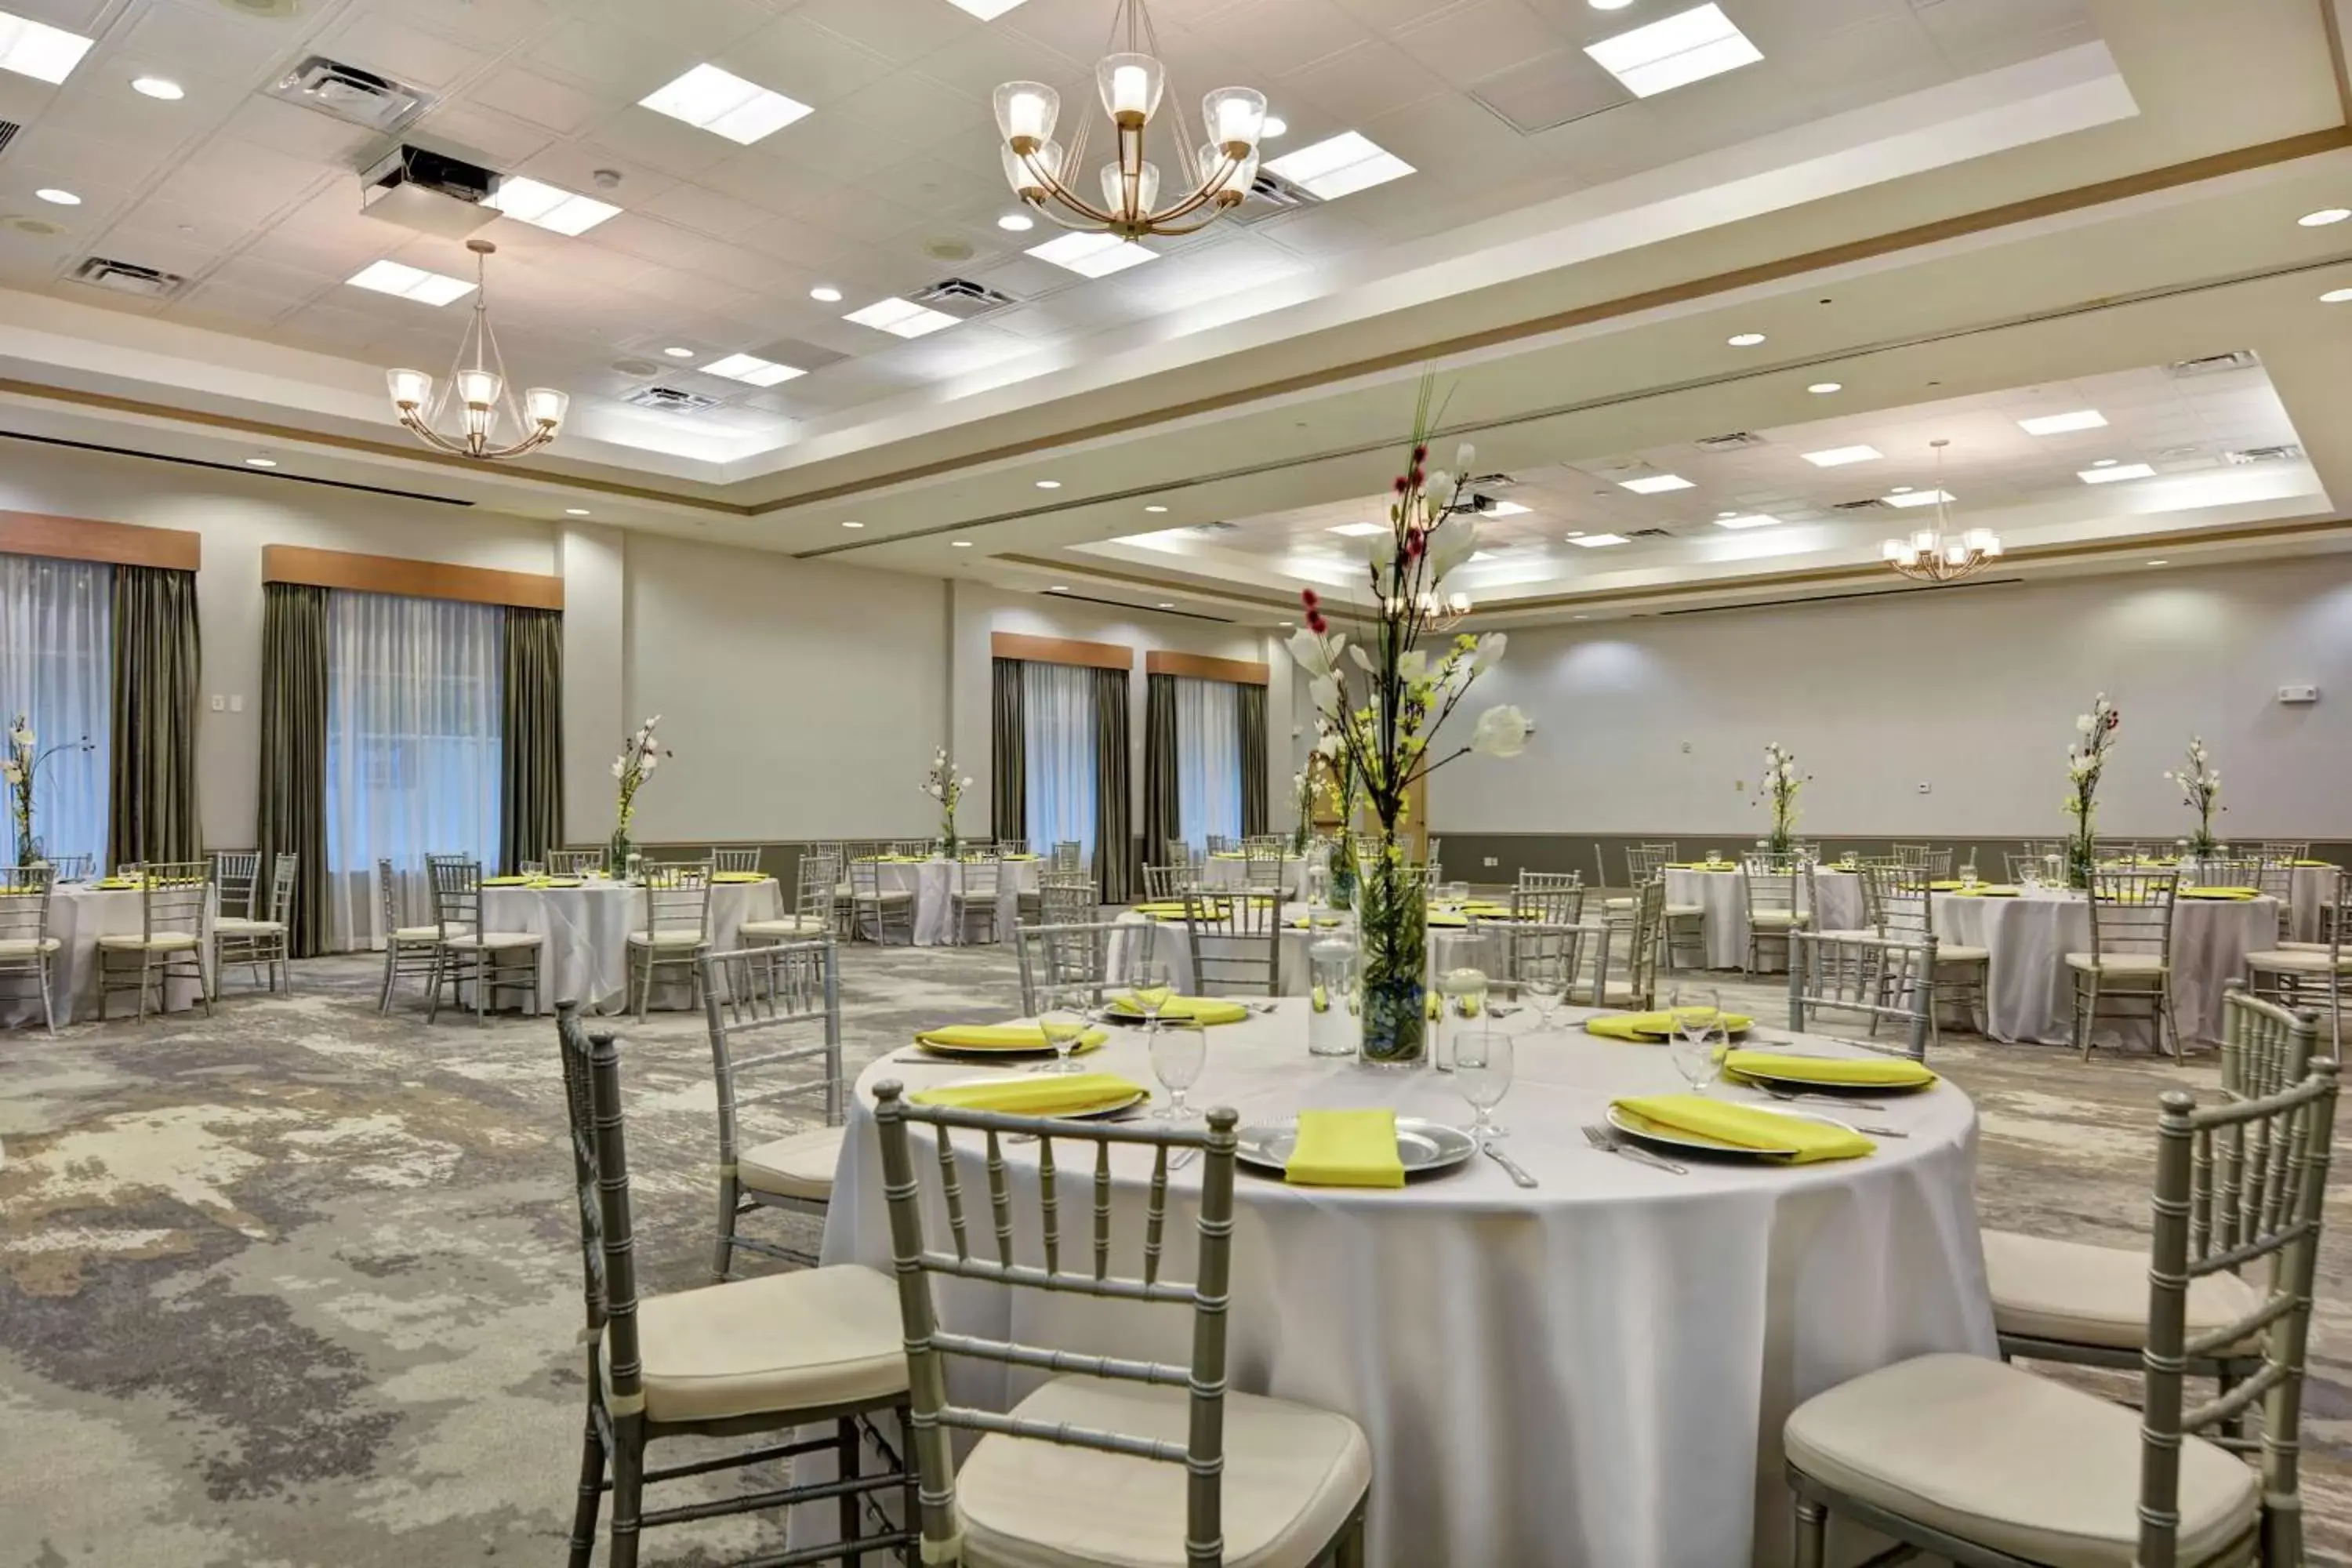 Meeting/conference room, Banquet Facilities in Hilton Garden Inn Orlando Lake Buena Vista